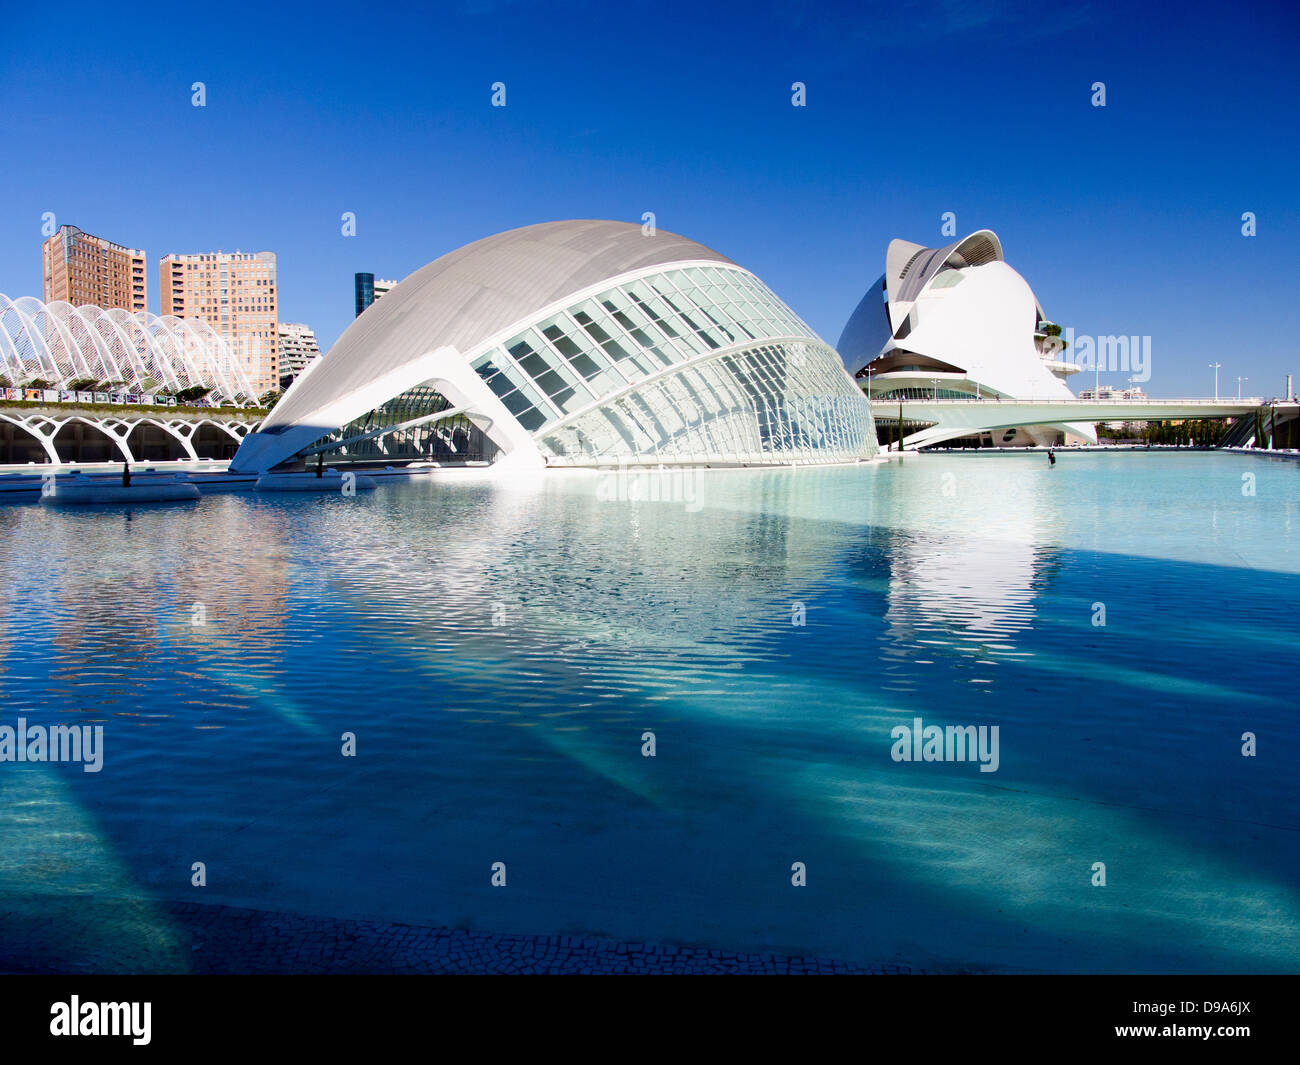 Valencia's Ciudad de las Artes y las Ciencias, Spain - the Hemisferic and Palau de les Arts 4 Stock Photo